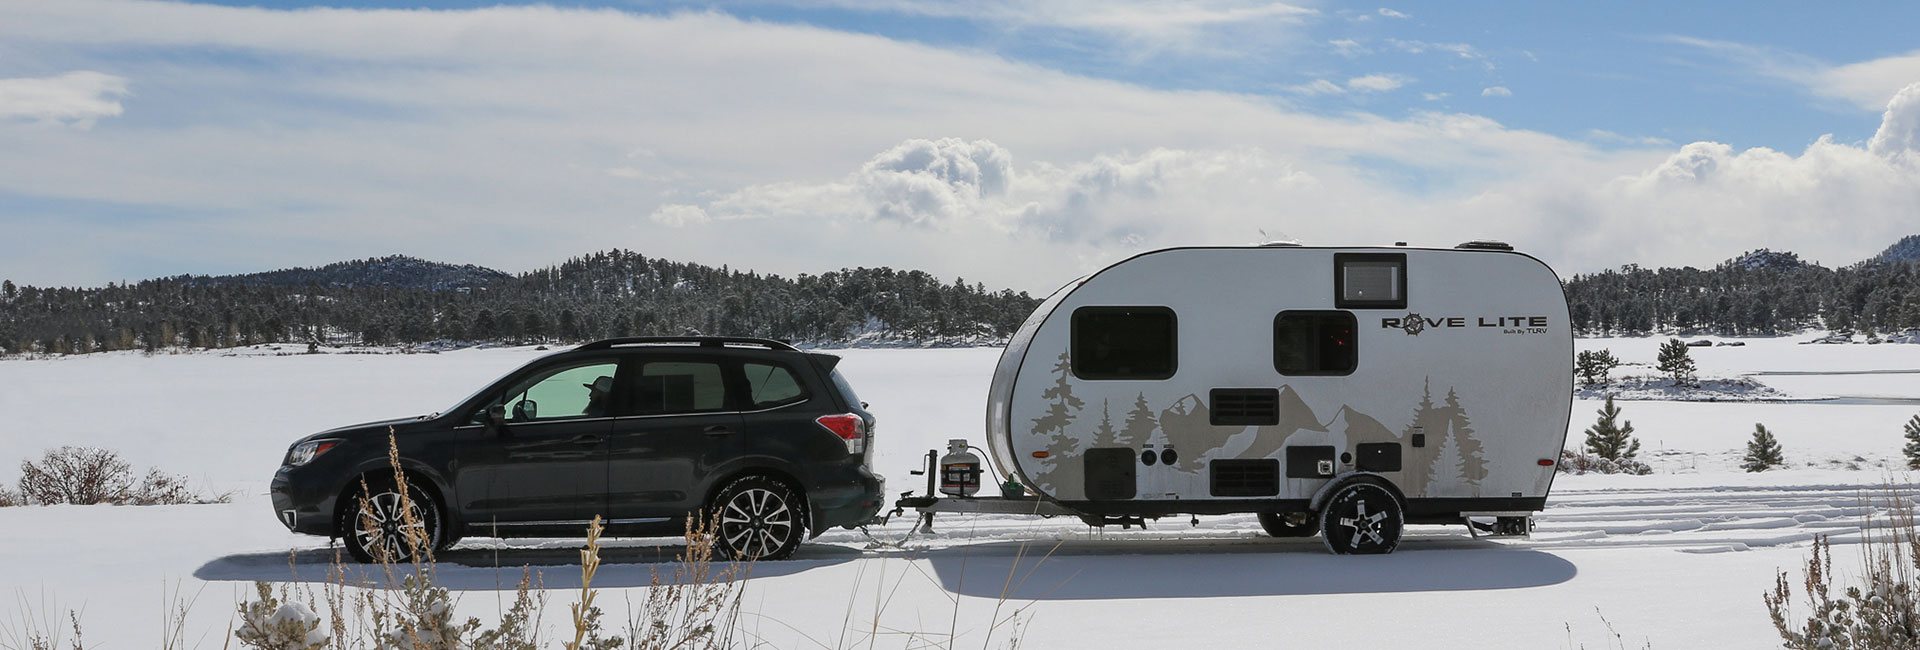 Rove Lite trailer in the snow